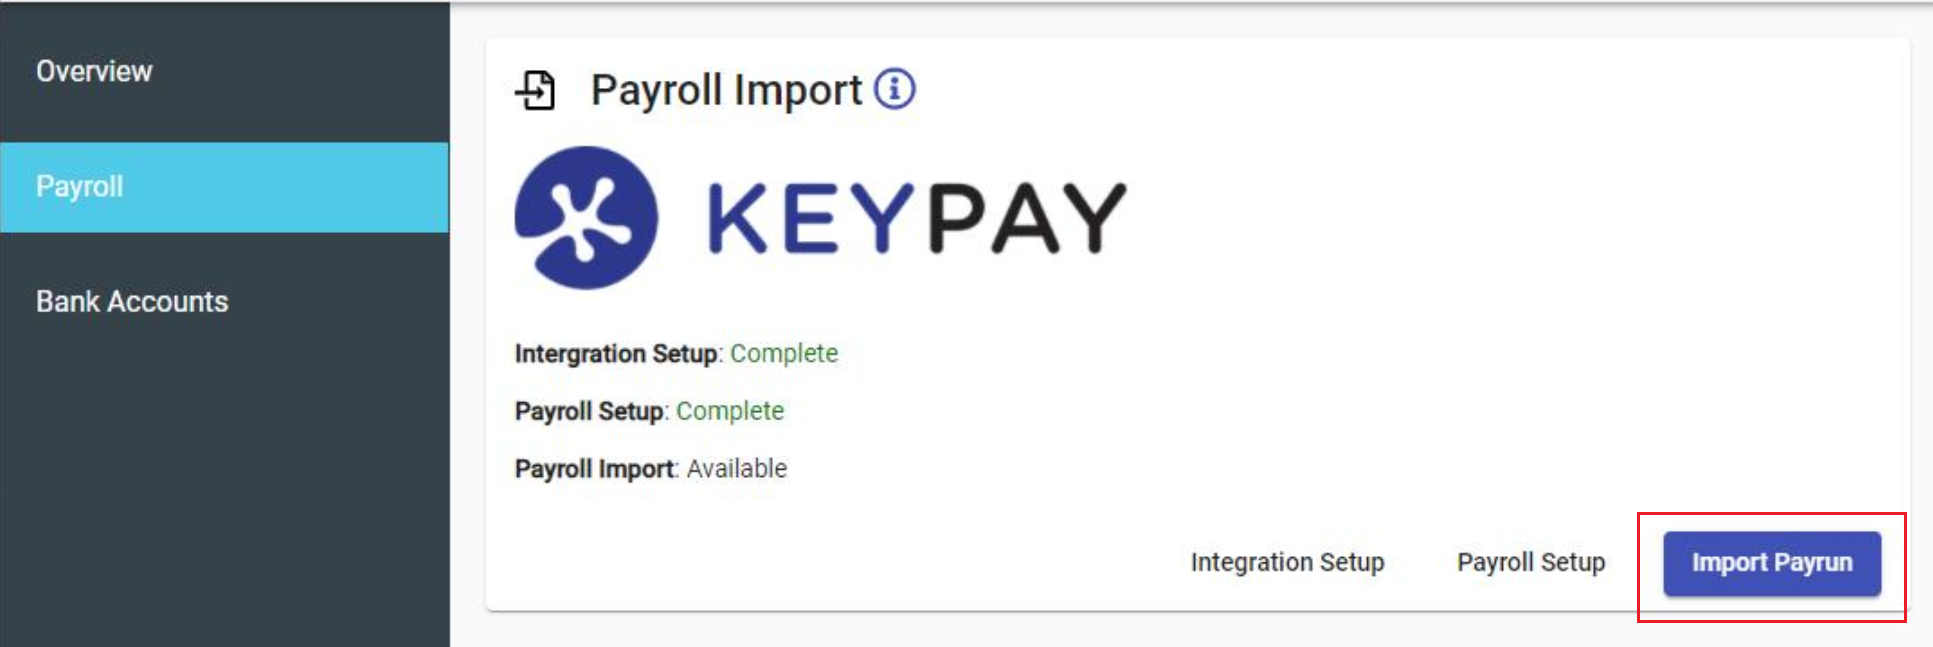 Import_payrun.png